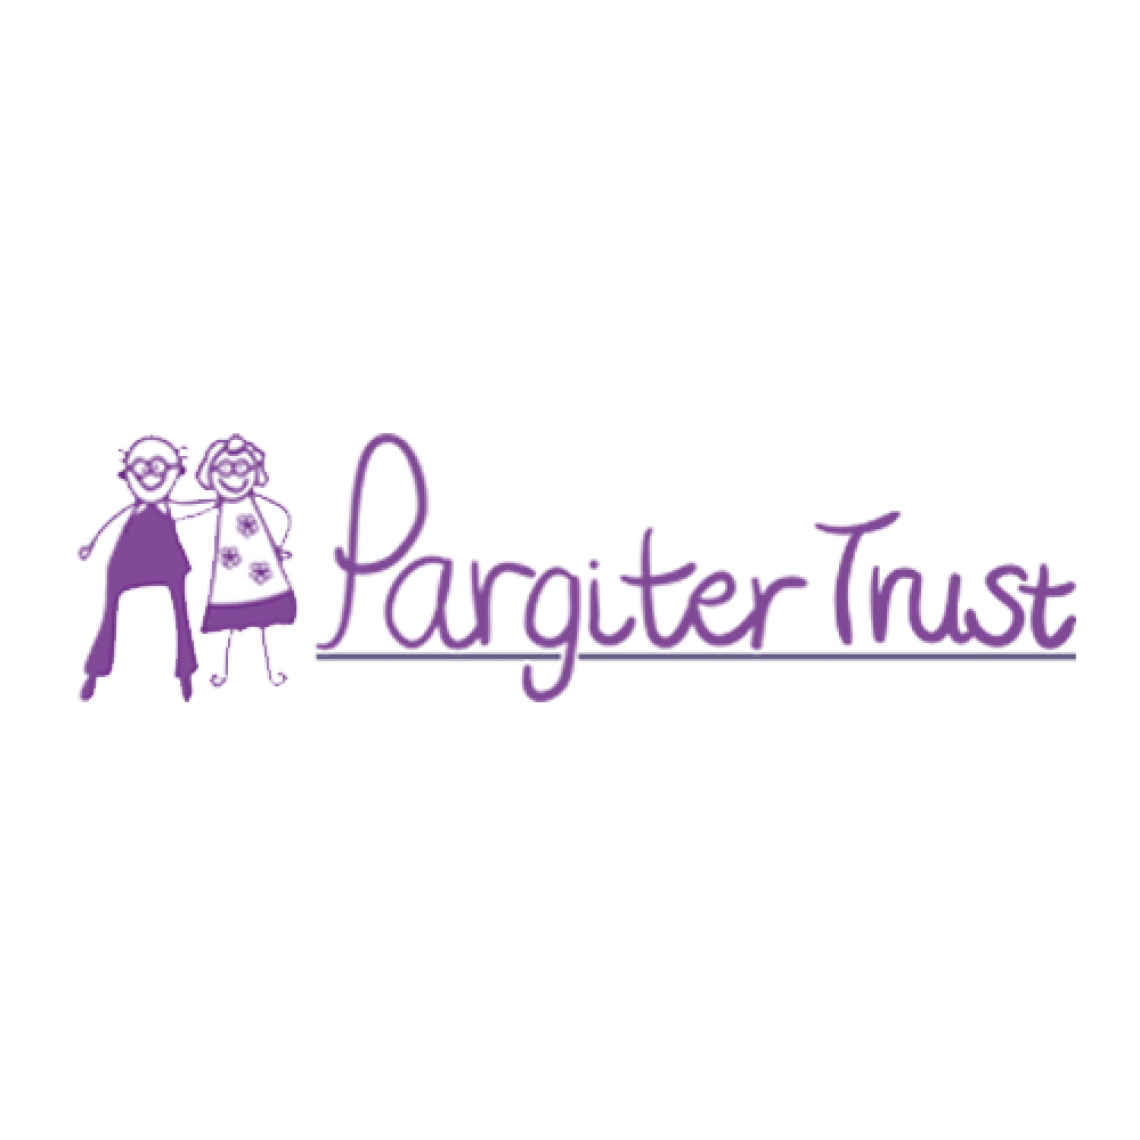 Pargiter Trust logo